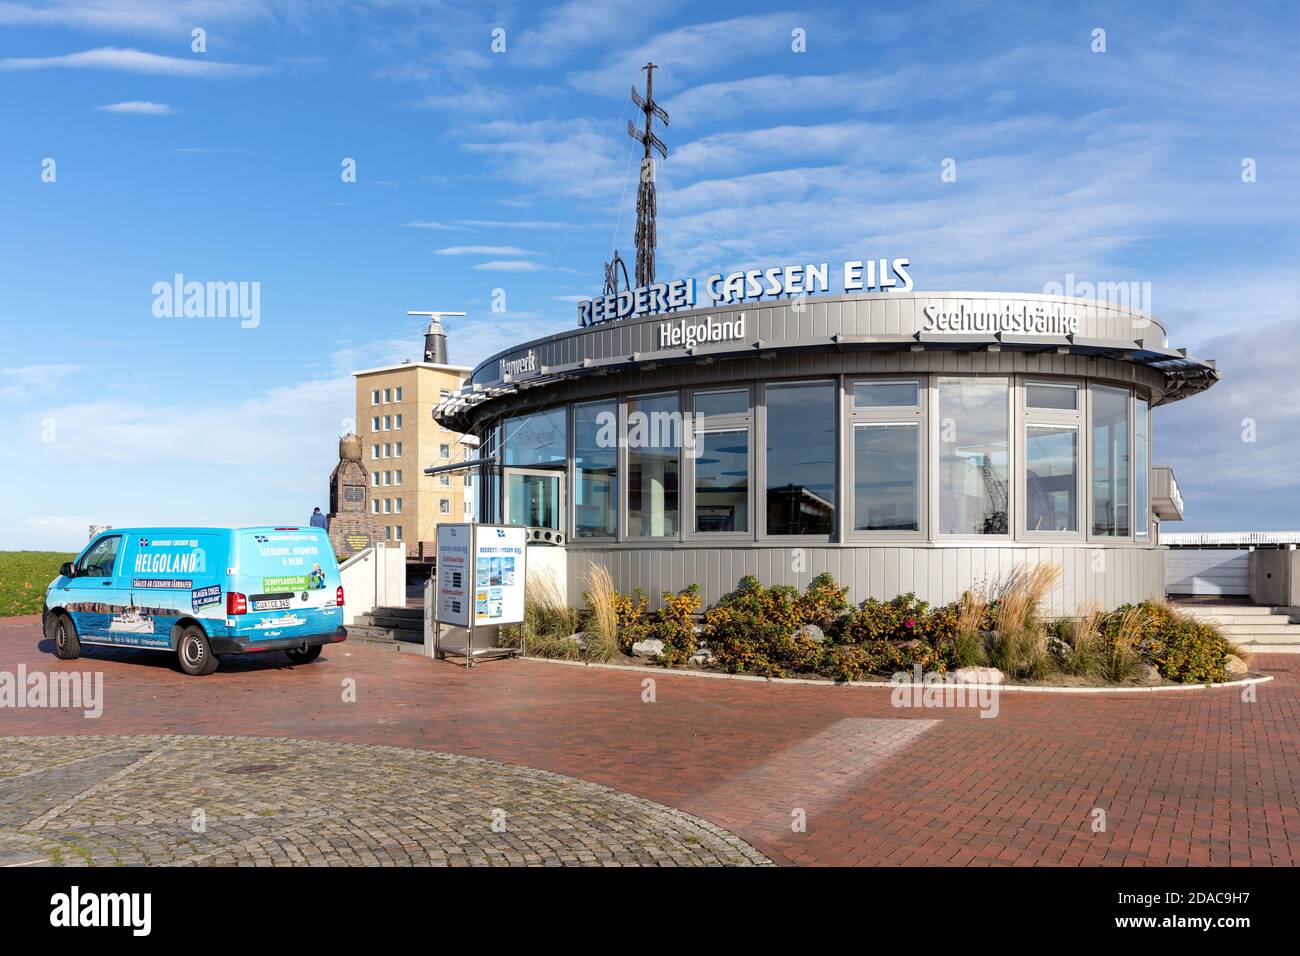 Cassen Eils pavillon à Cuxhaven, Allemagne. Cassen Eils est la plus ancienne compagnie maritime offrant le transport à Heligoland. Banque D'Images